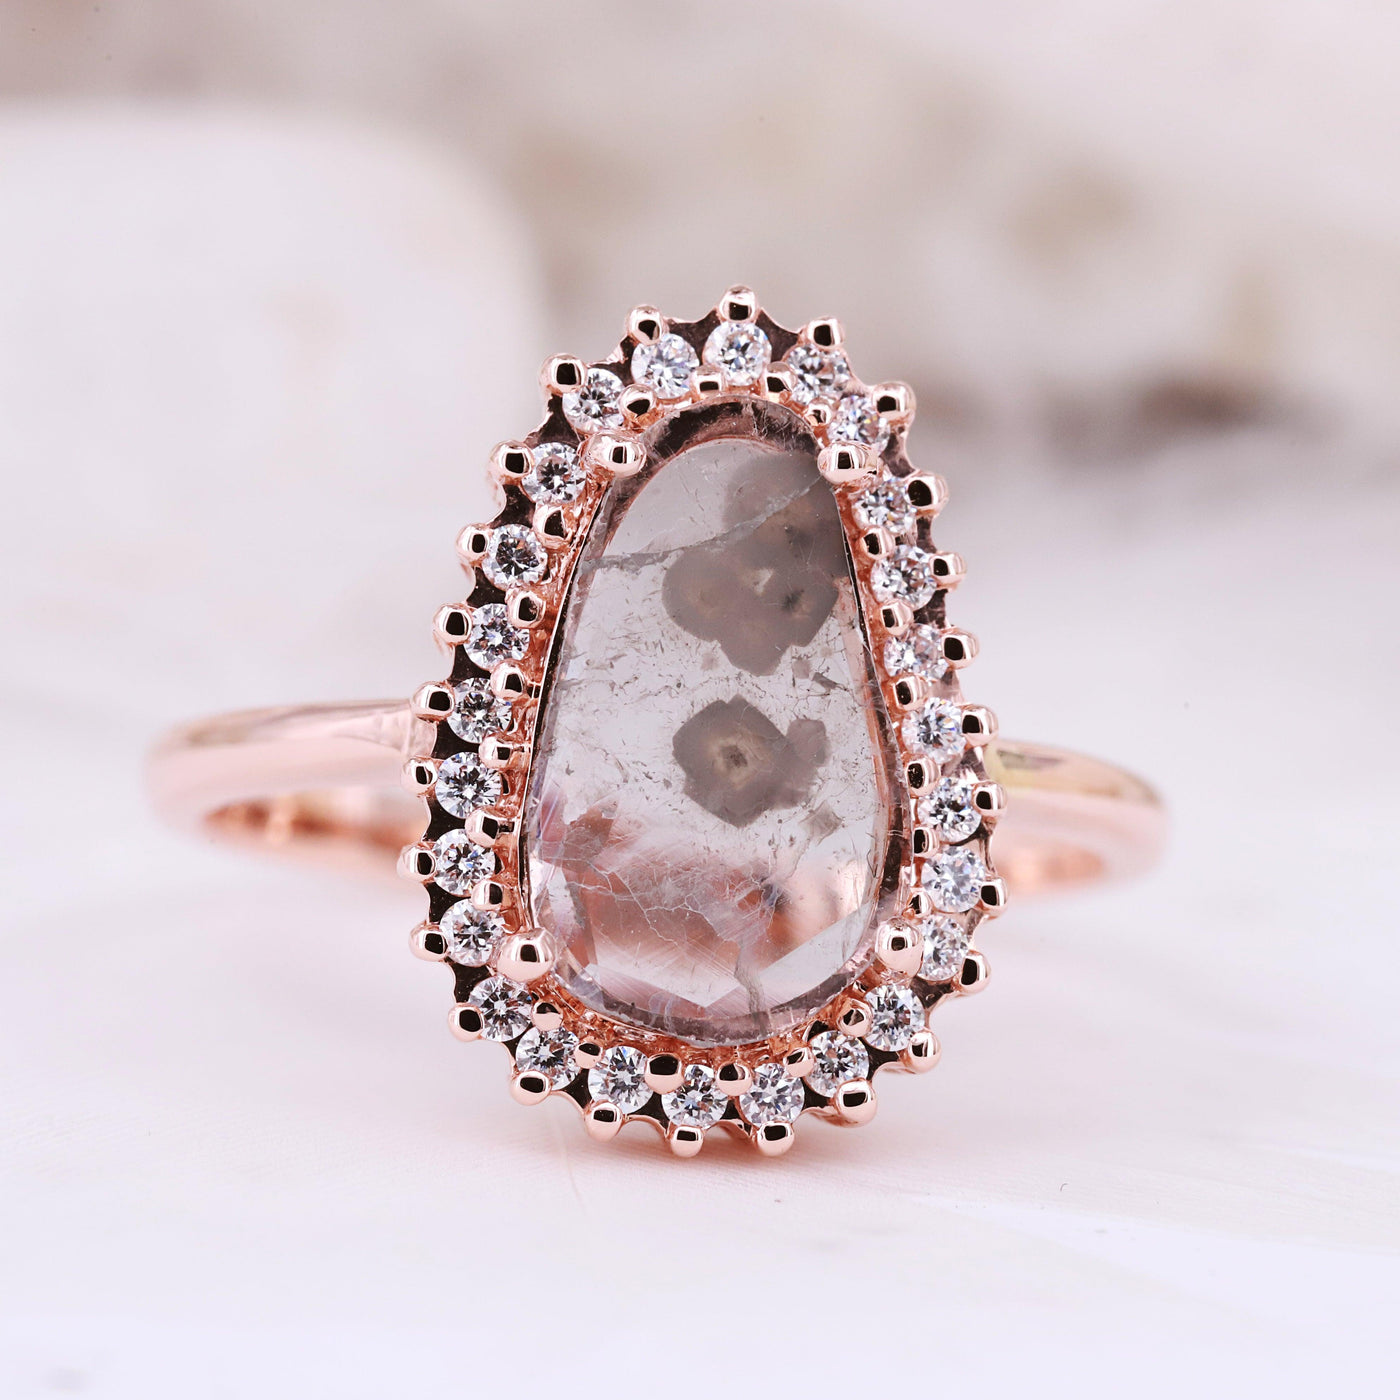 Elegant Natural Slice Diamond Engagement Ring - Unique & Timeless Design Modern ring Gift for loved ones Trendy rings Artistic diamond ring - Rubysta